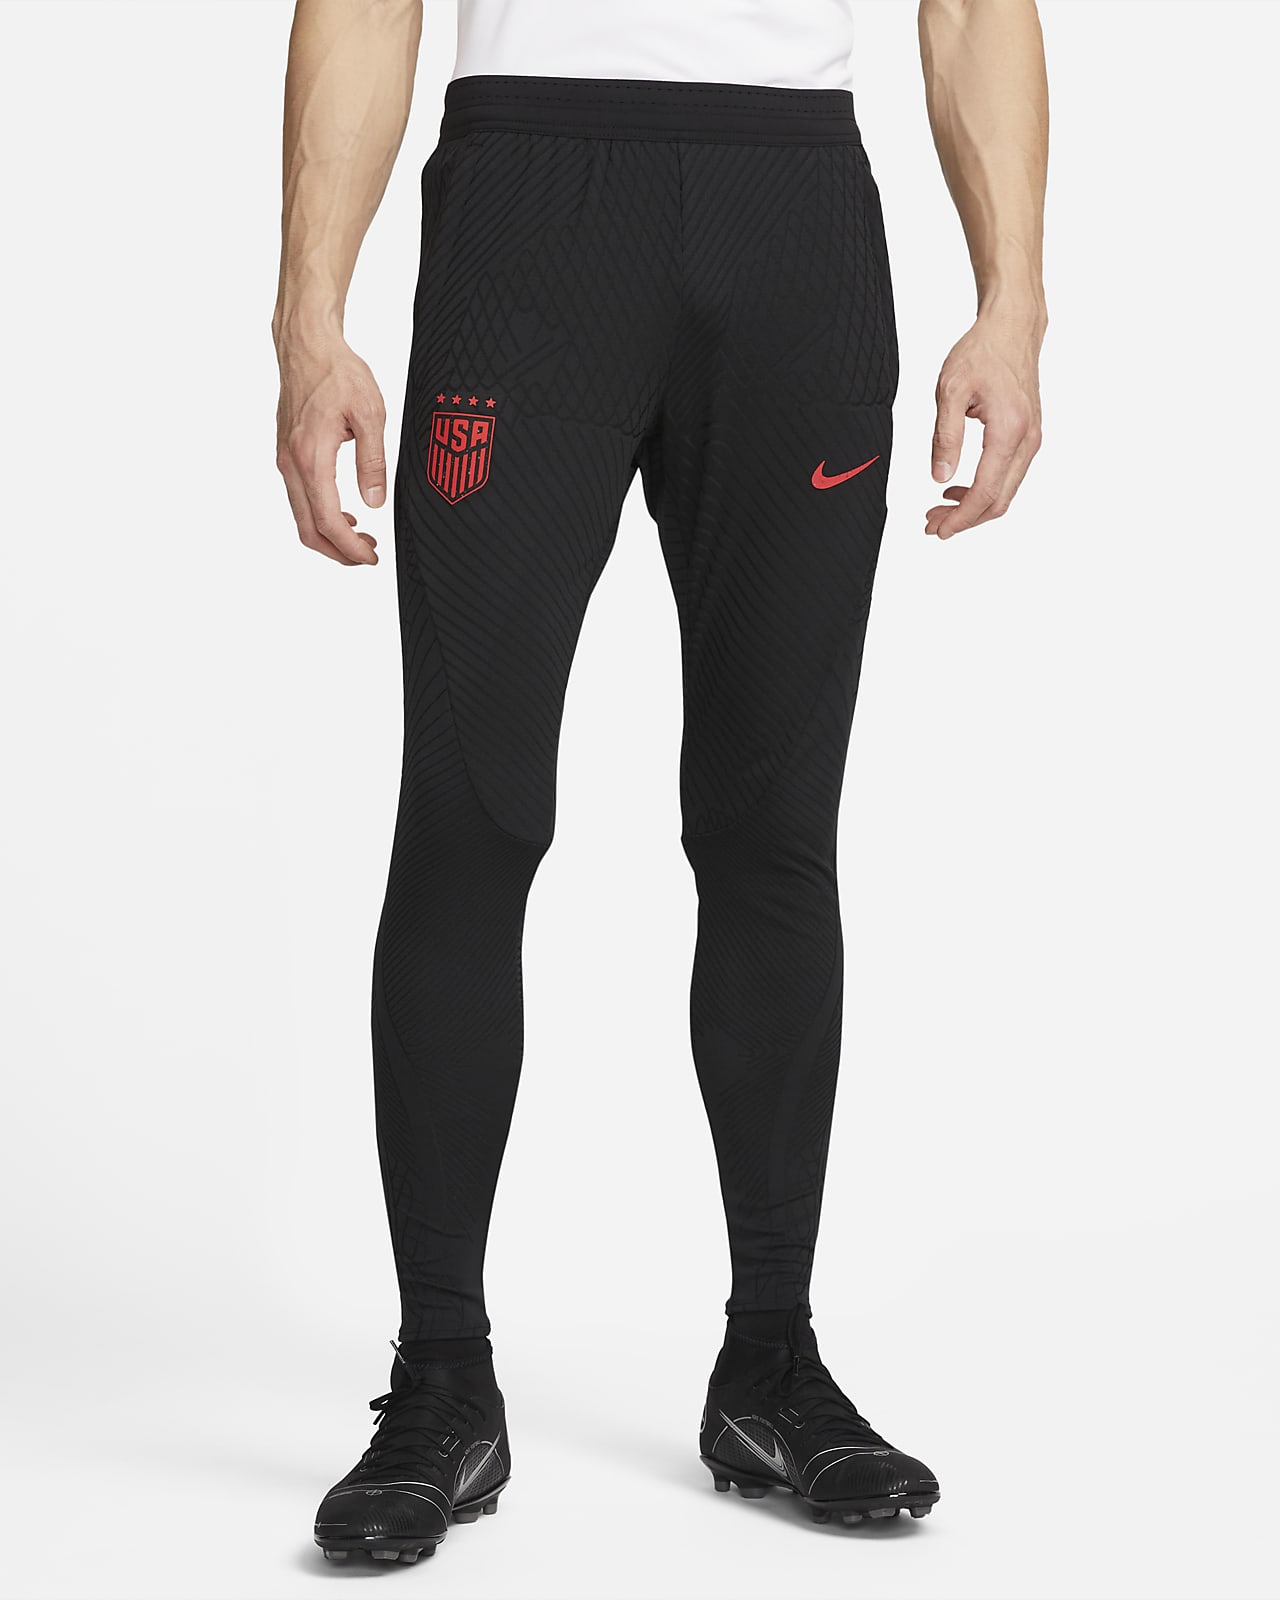 U.S Strike Elite Men's Nike Dri-FIT ADV Knit Soccer Pants